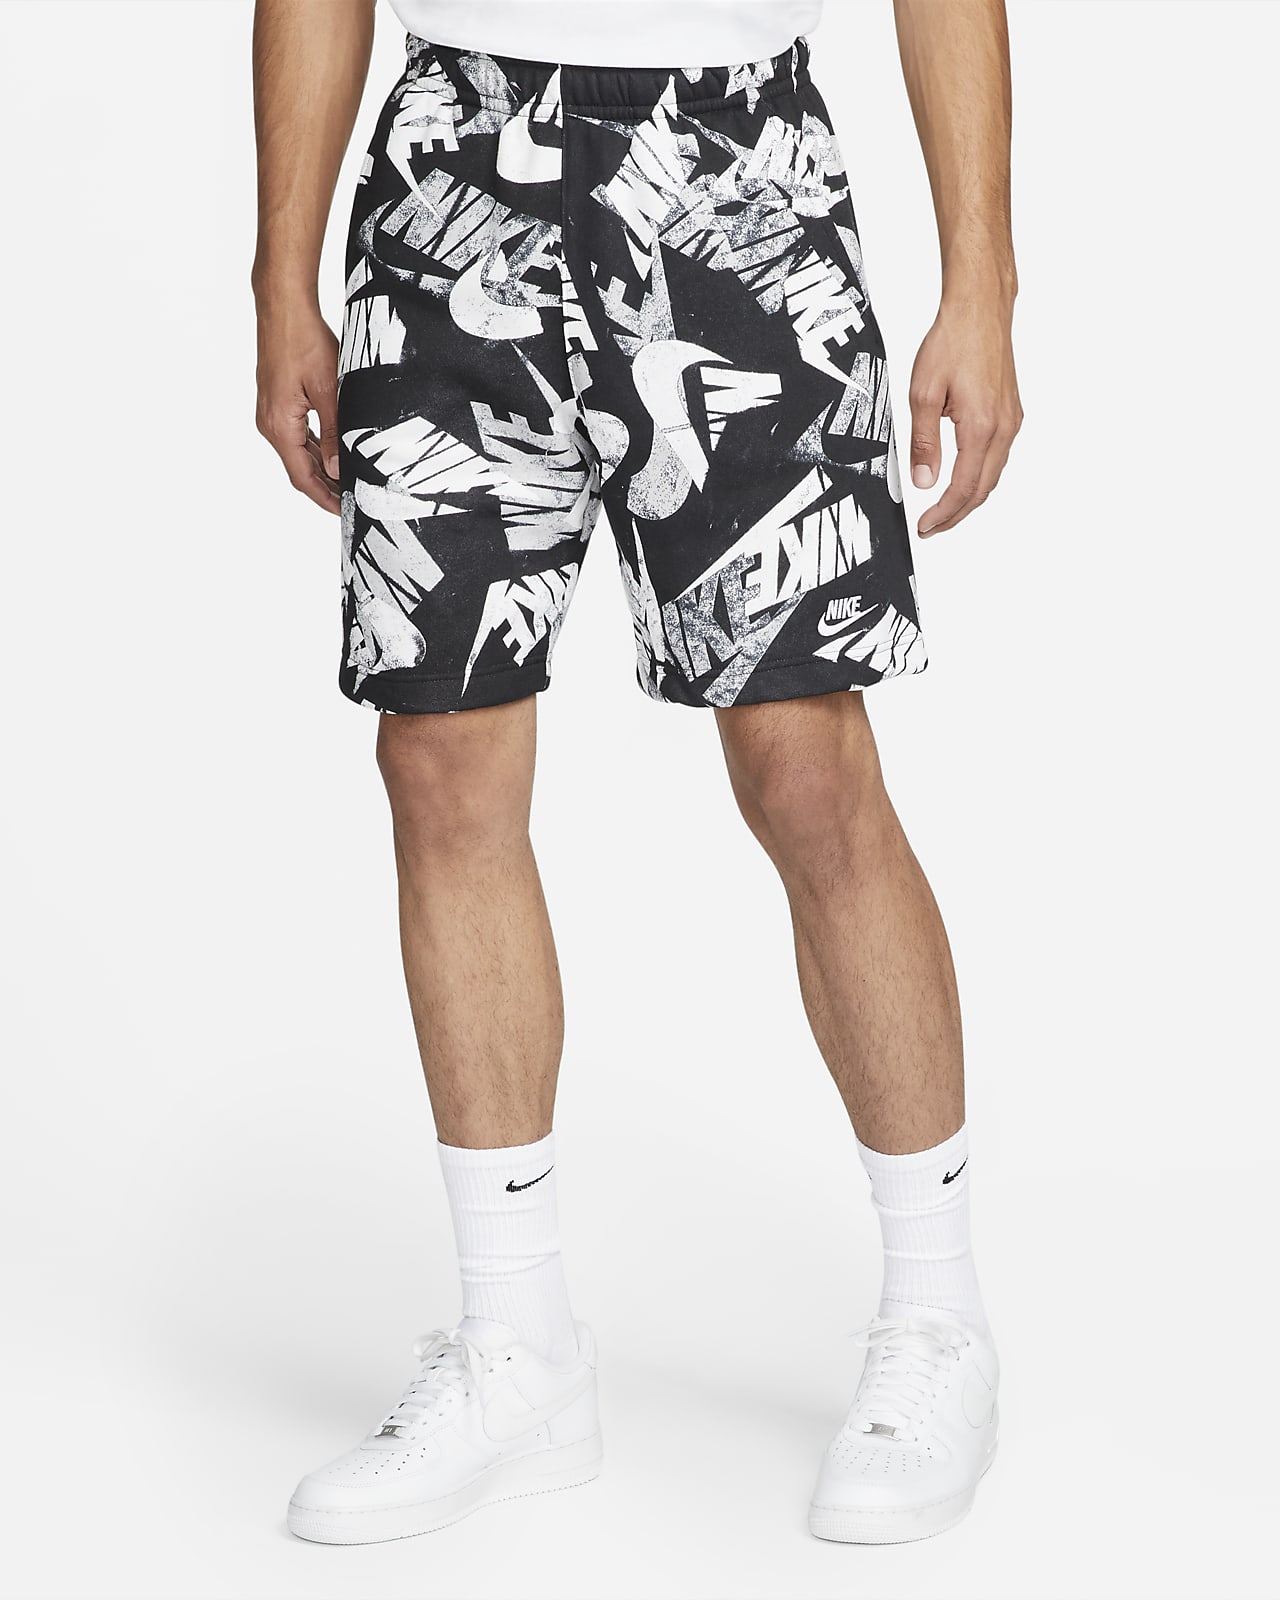 Shorts estampados para hombre Nike Essentials+. Nike MX